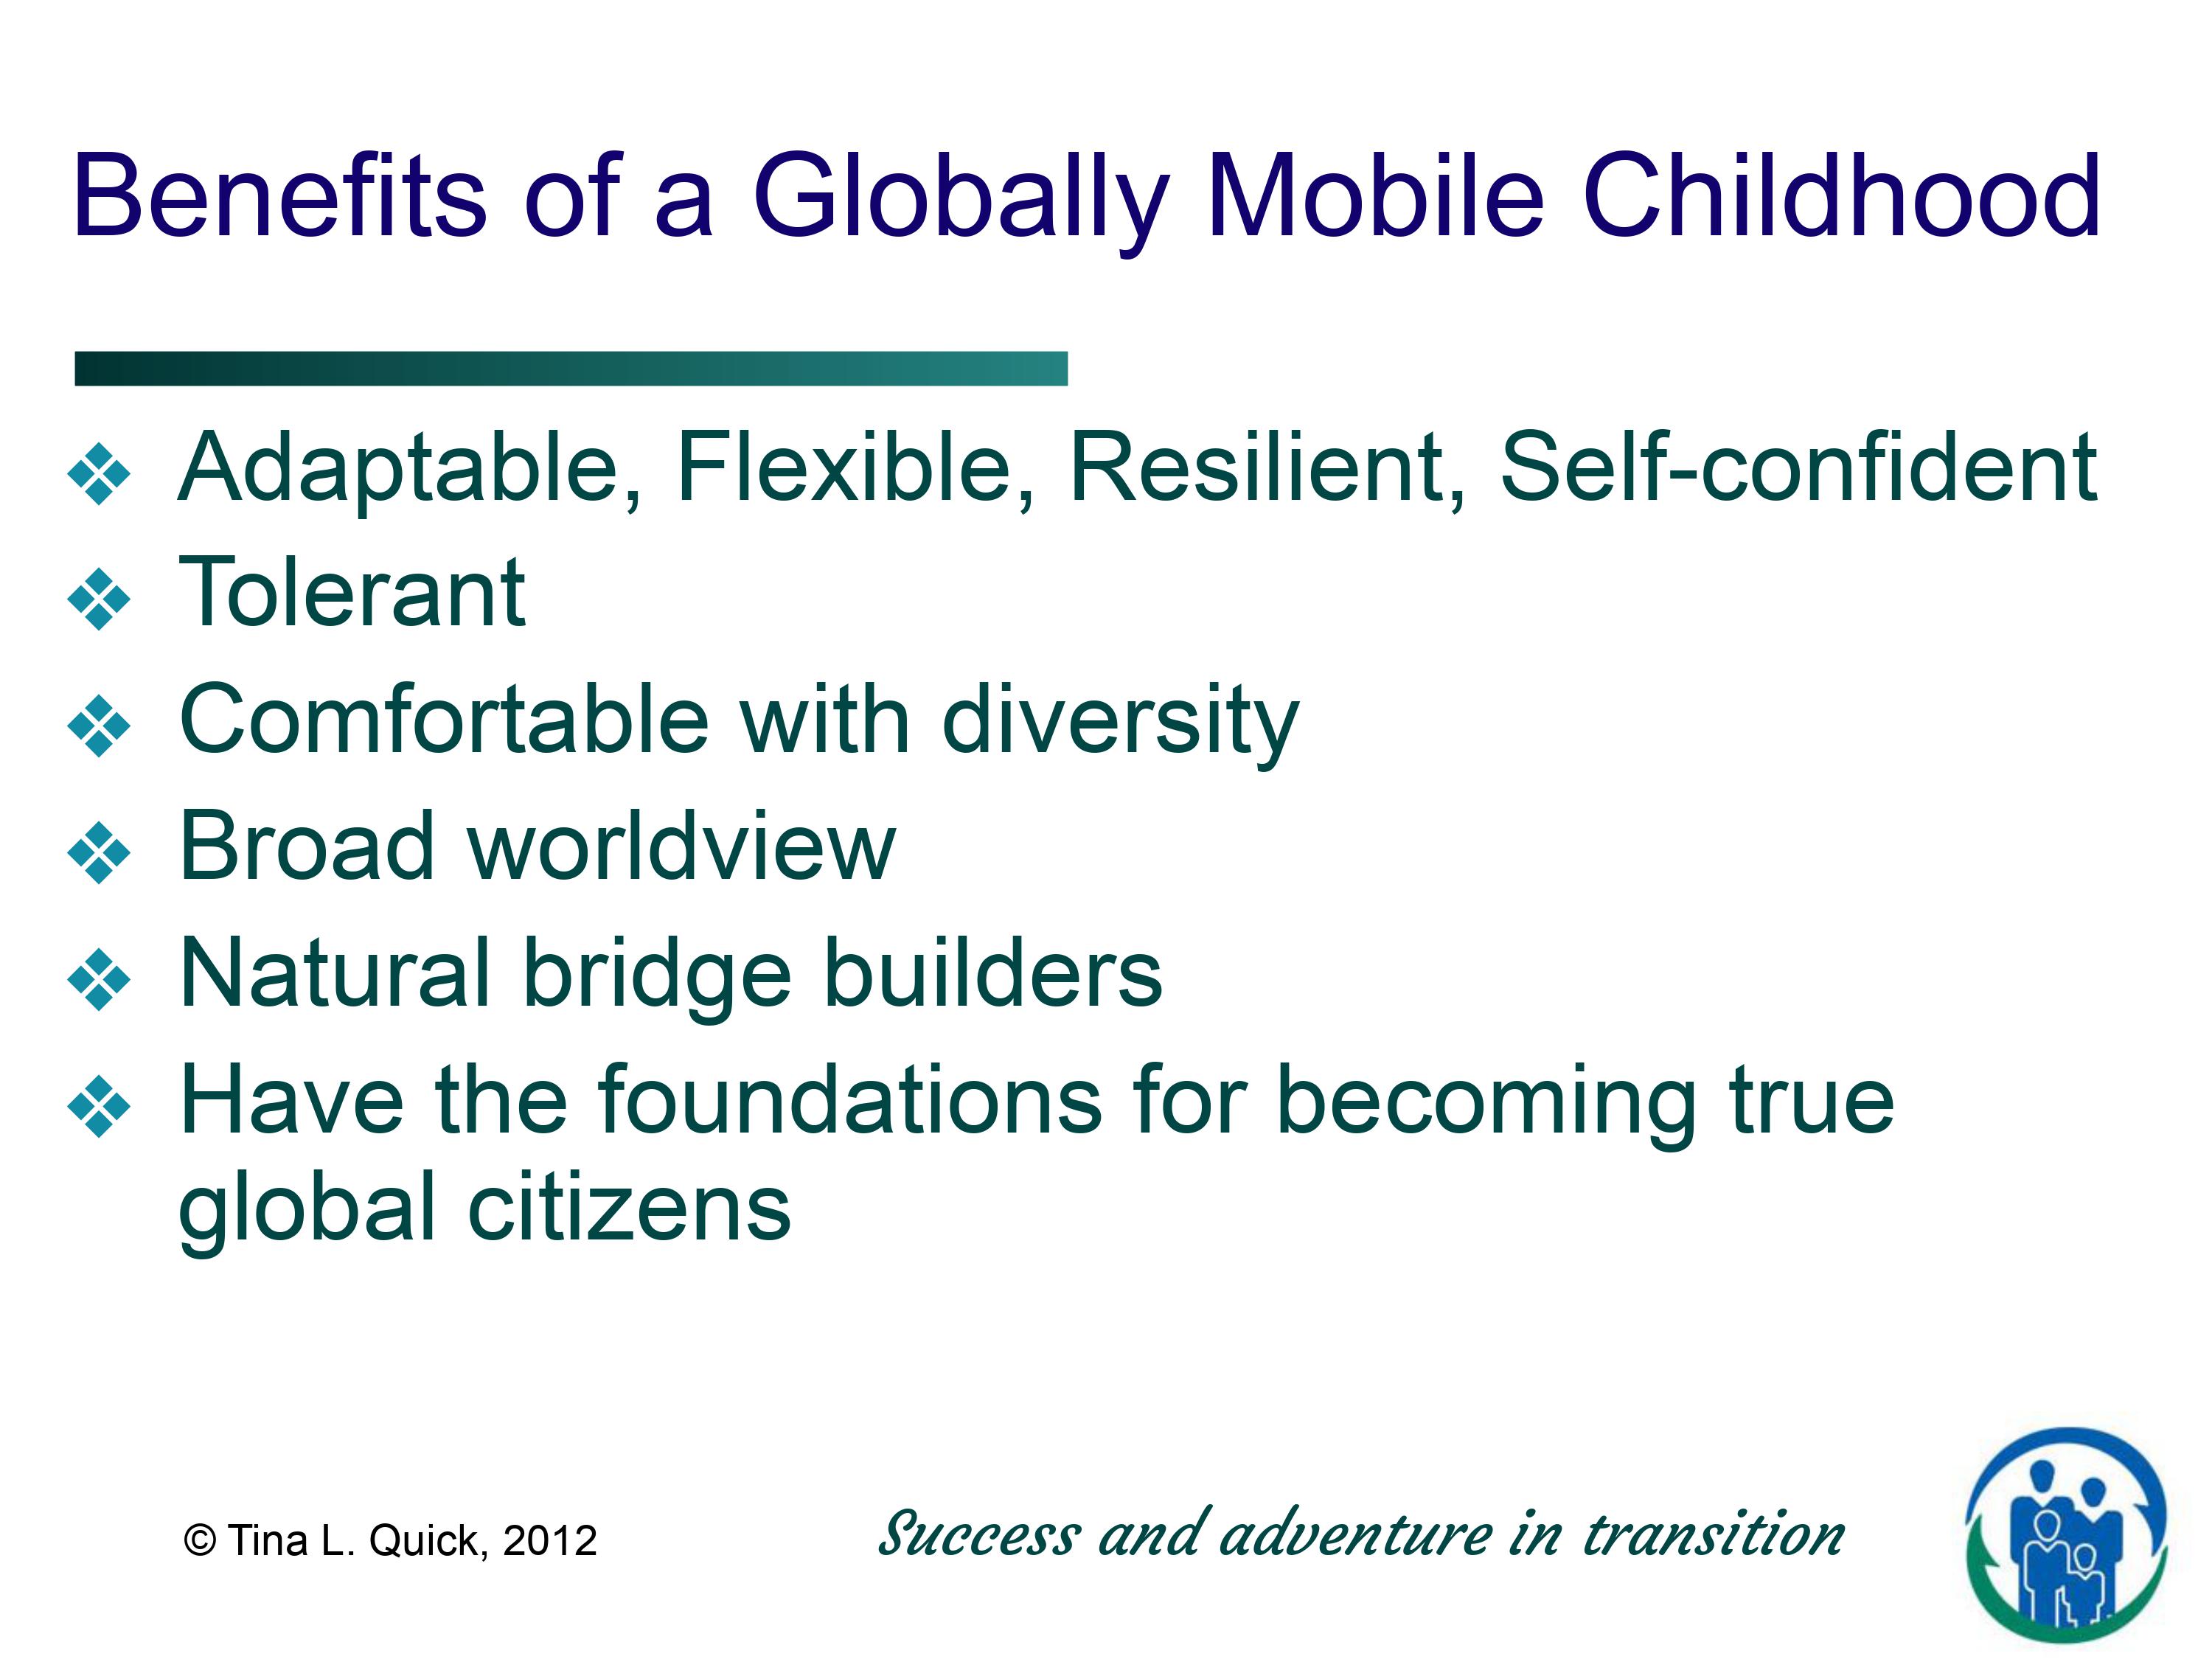 Globally Mobile Childhood